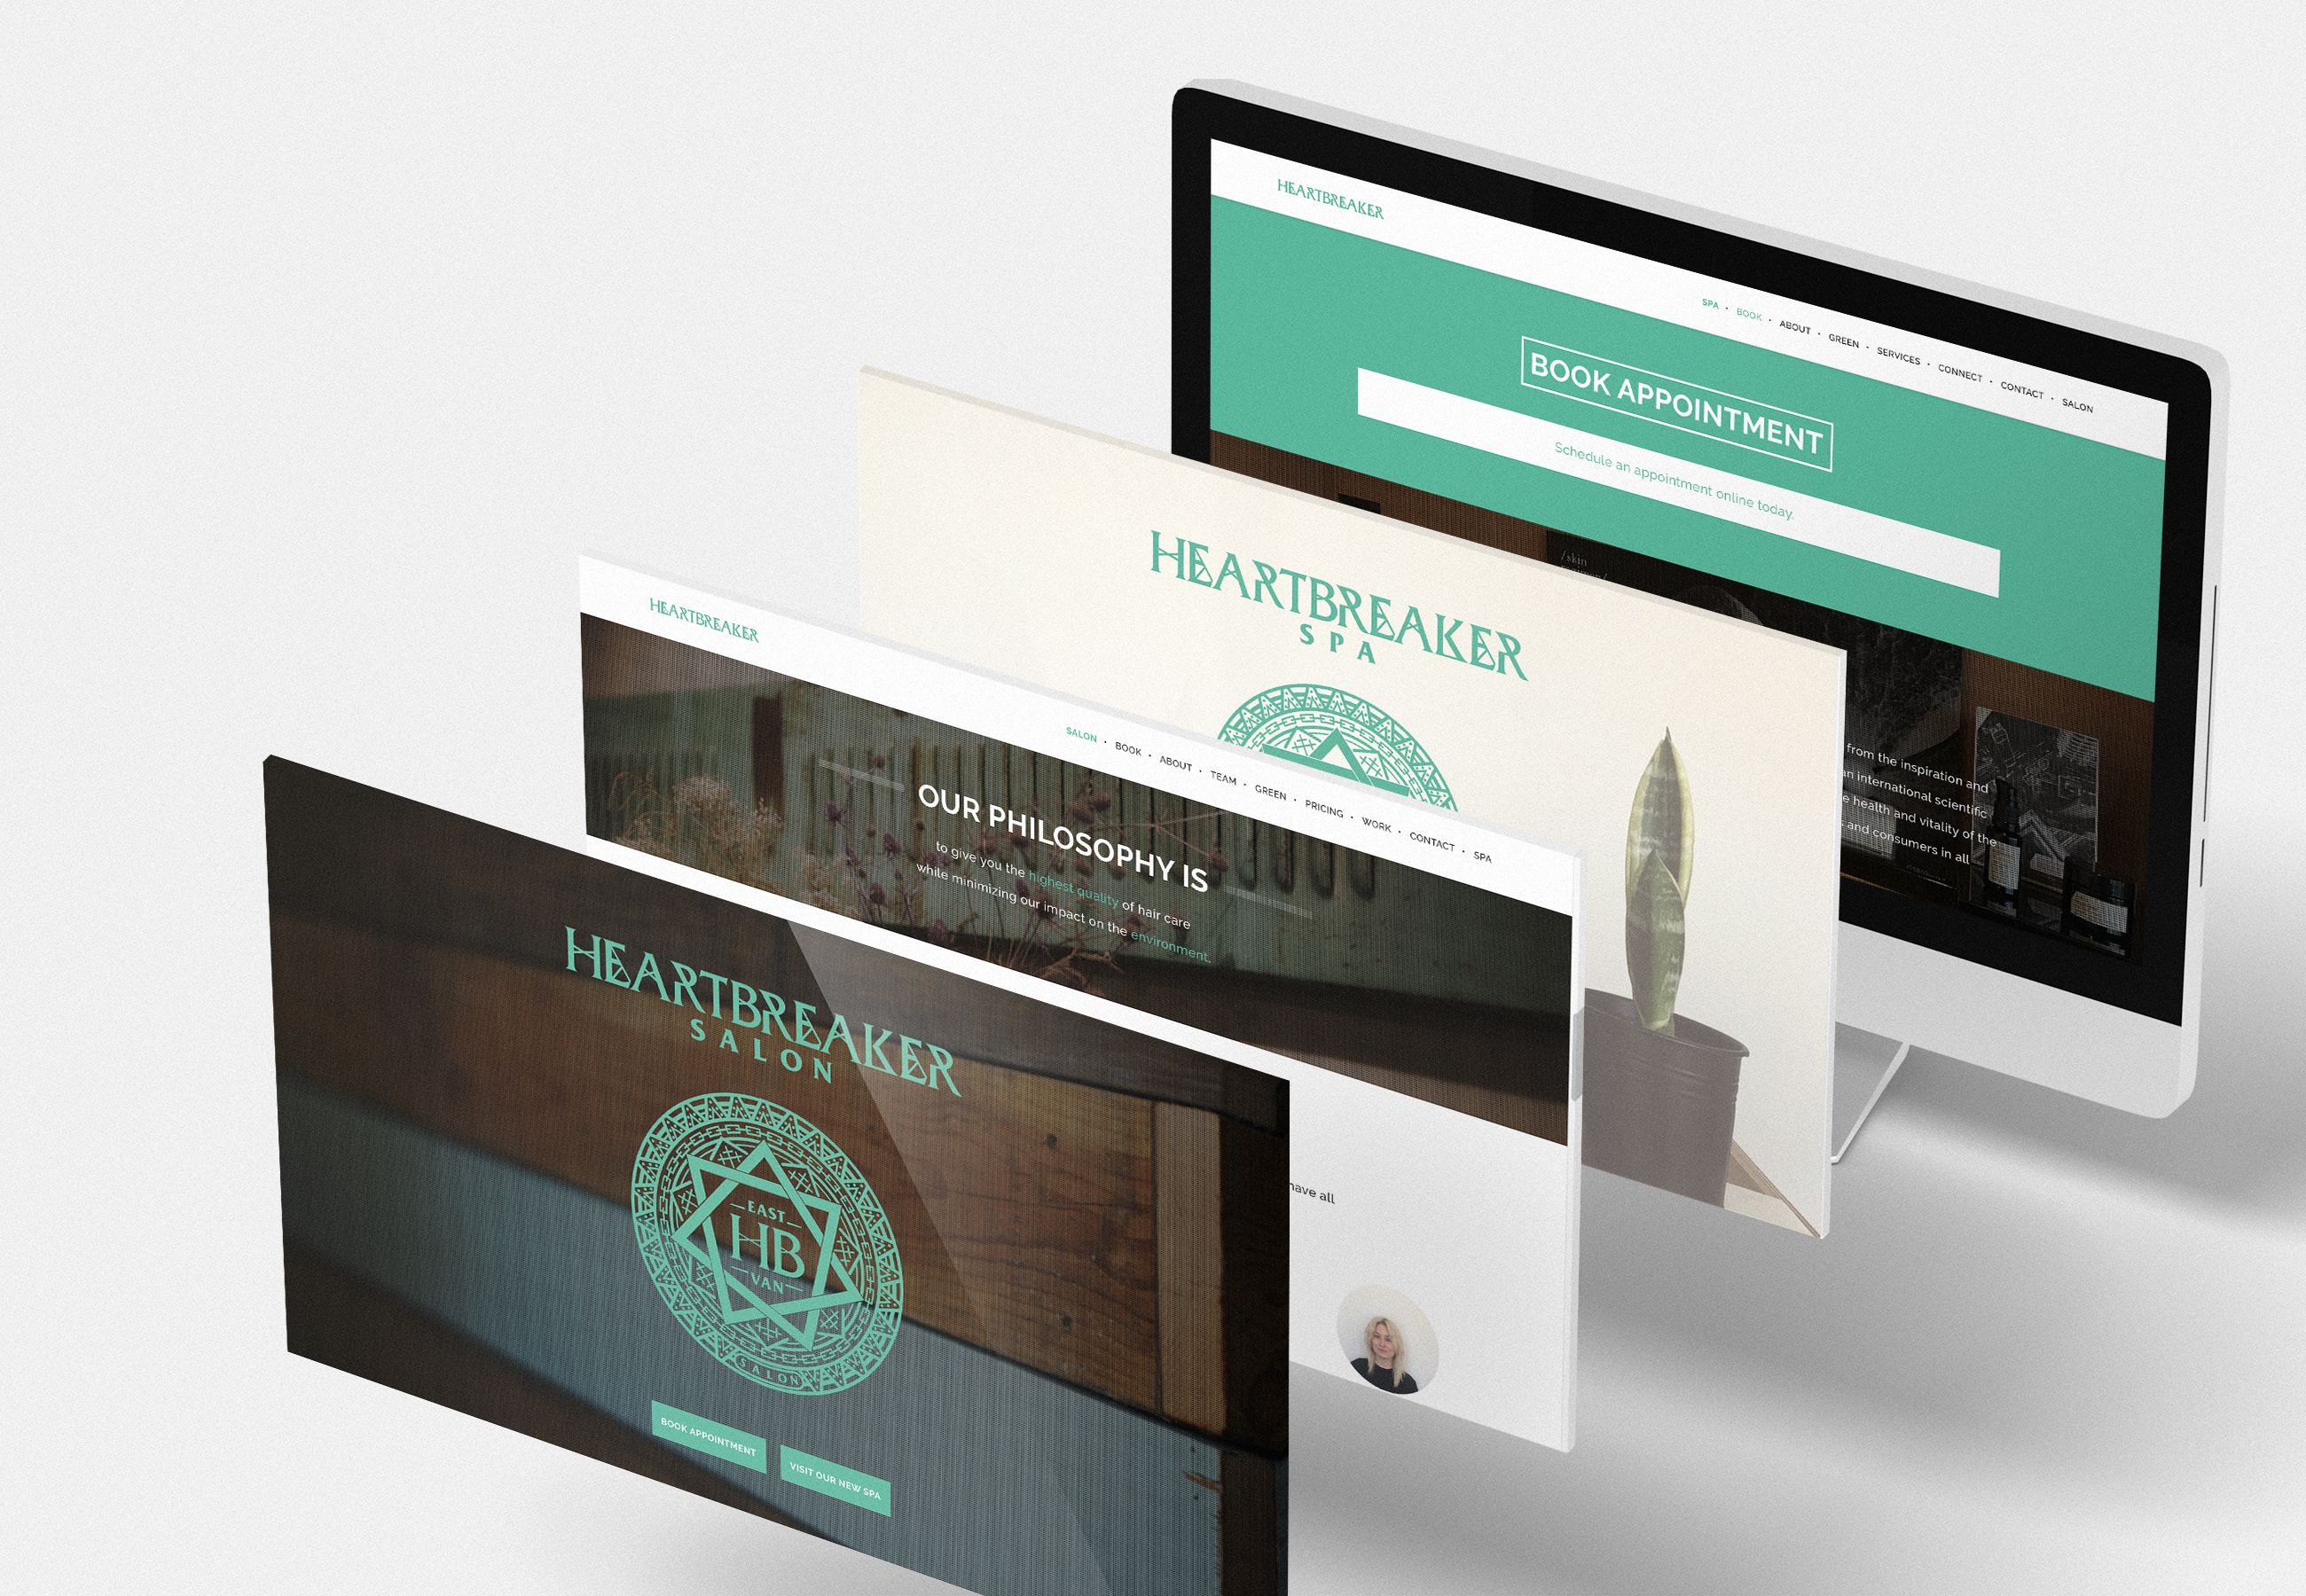 Heartbreaker Salon & Spa - website